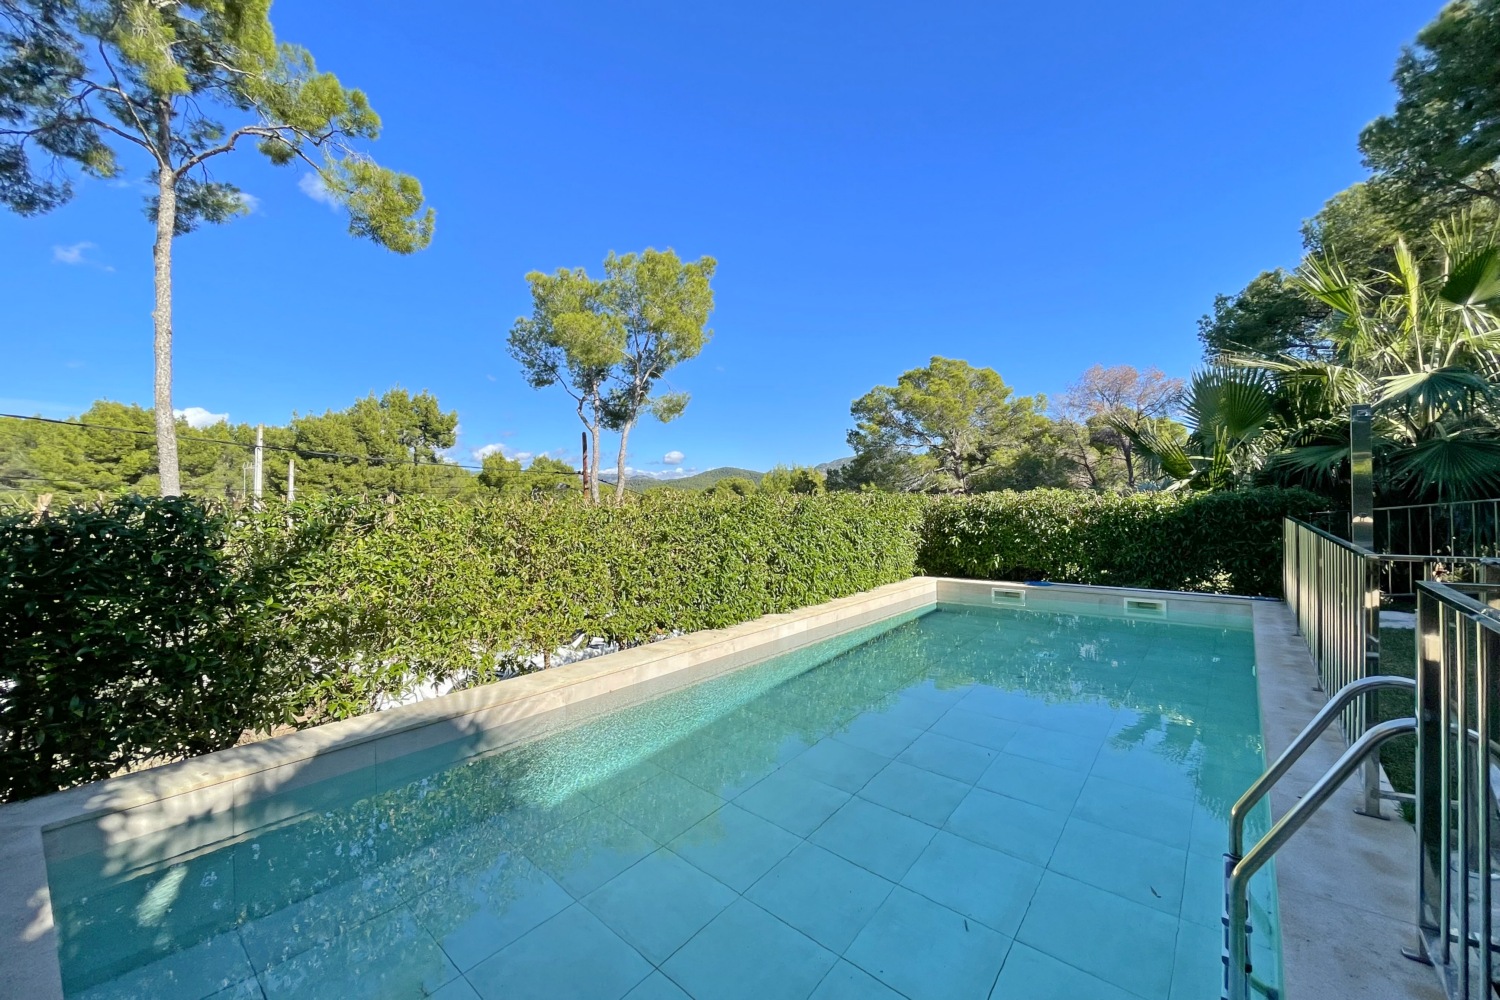 Preciosa villa moderna en Santa Ponsa con estupendas vistas panorámicas y jardín mediterráneo.